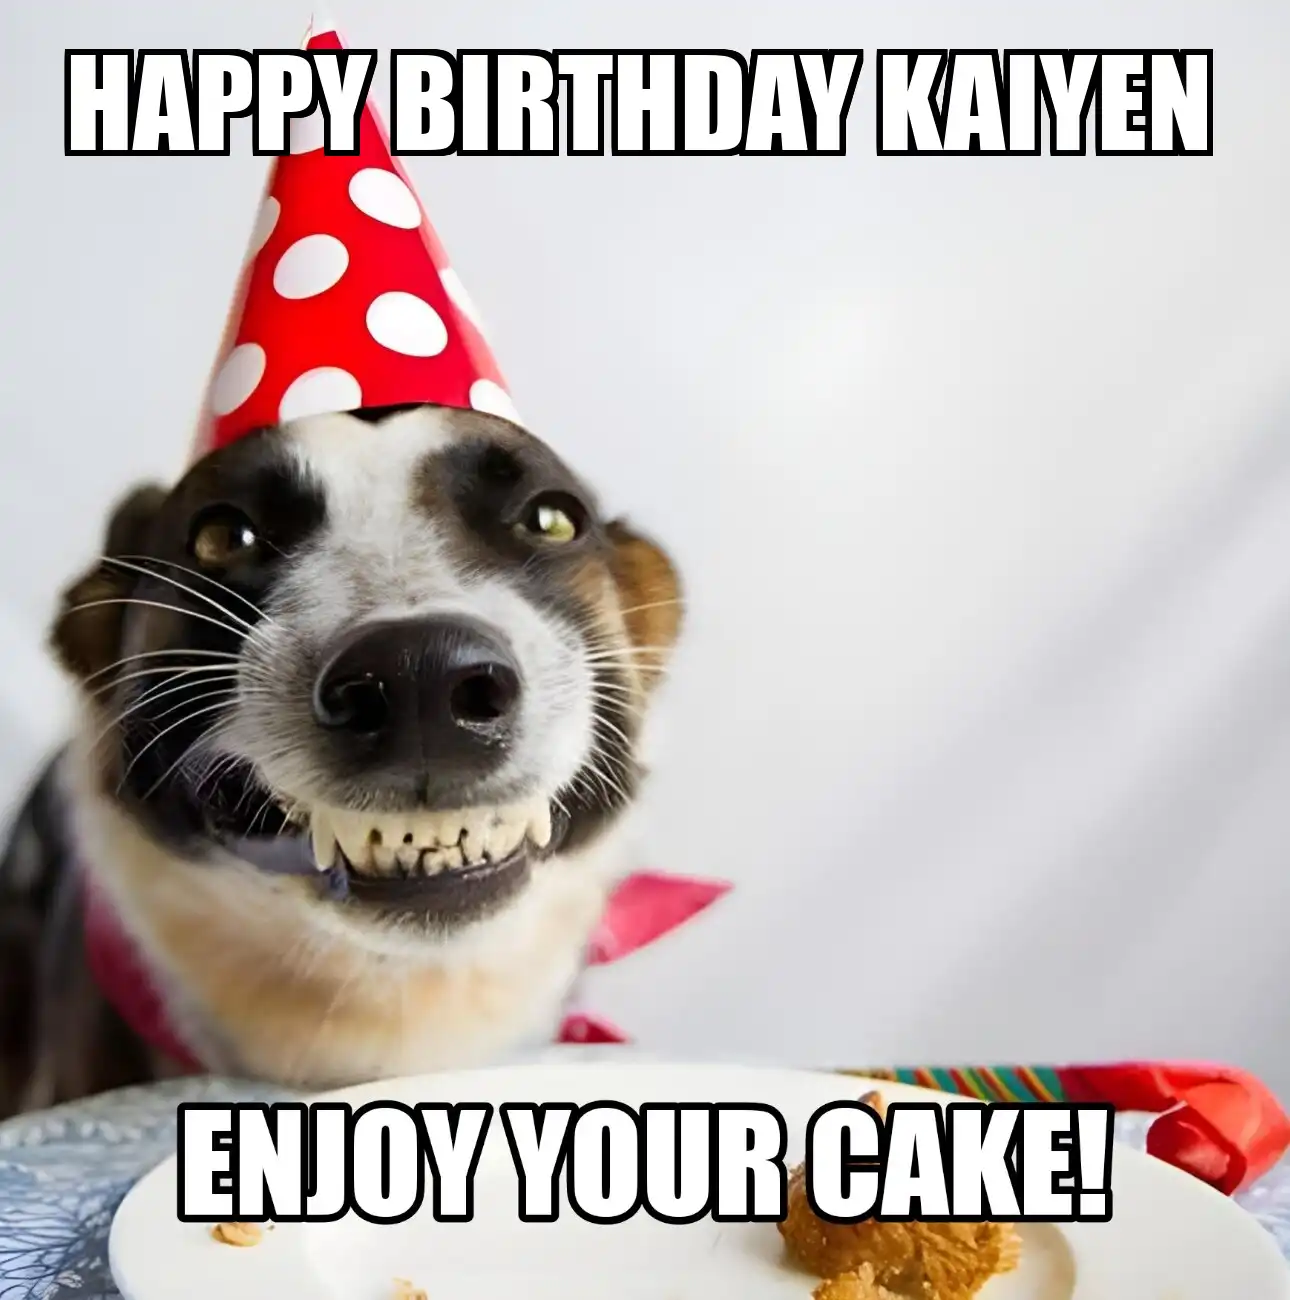 Happy Birthday Kaiyen Enjoy Your Cake Dog Meme